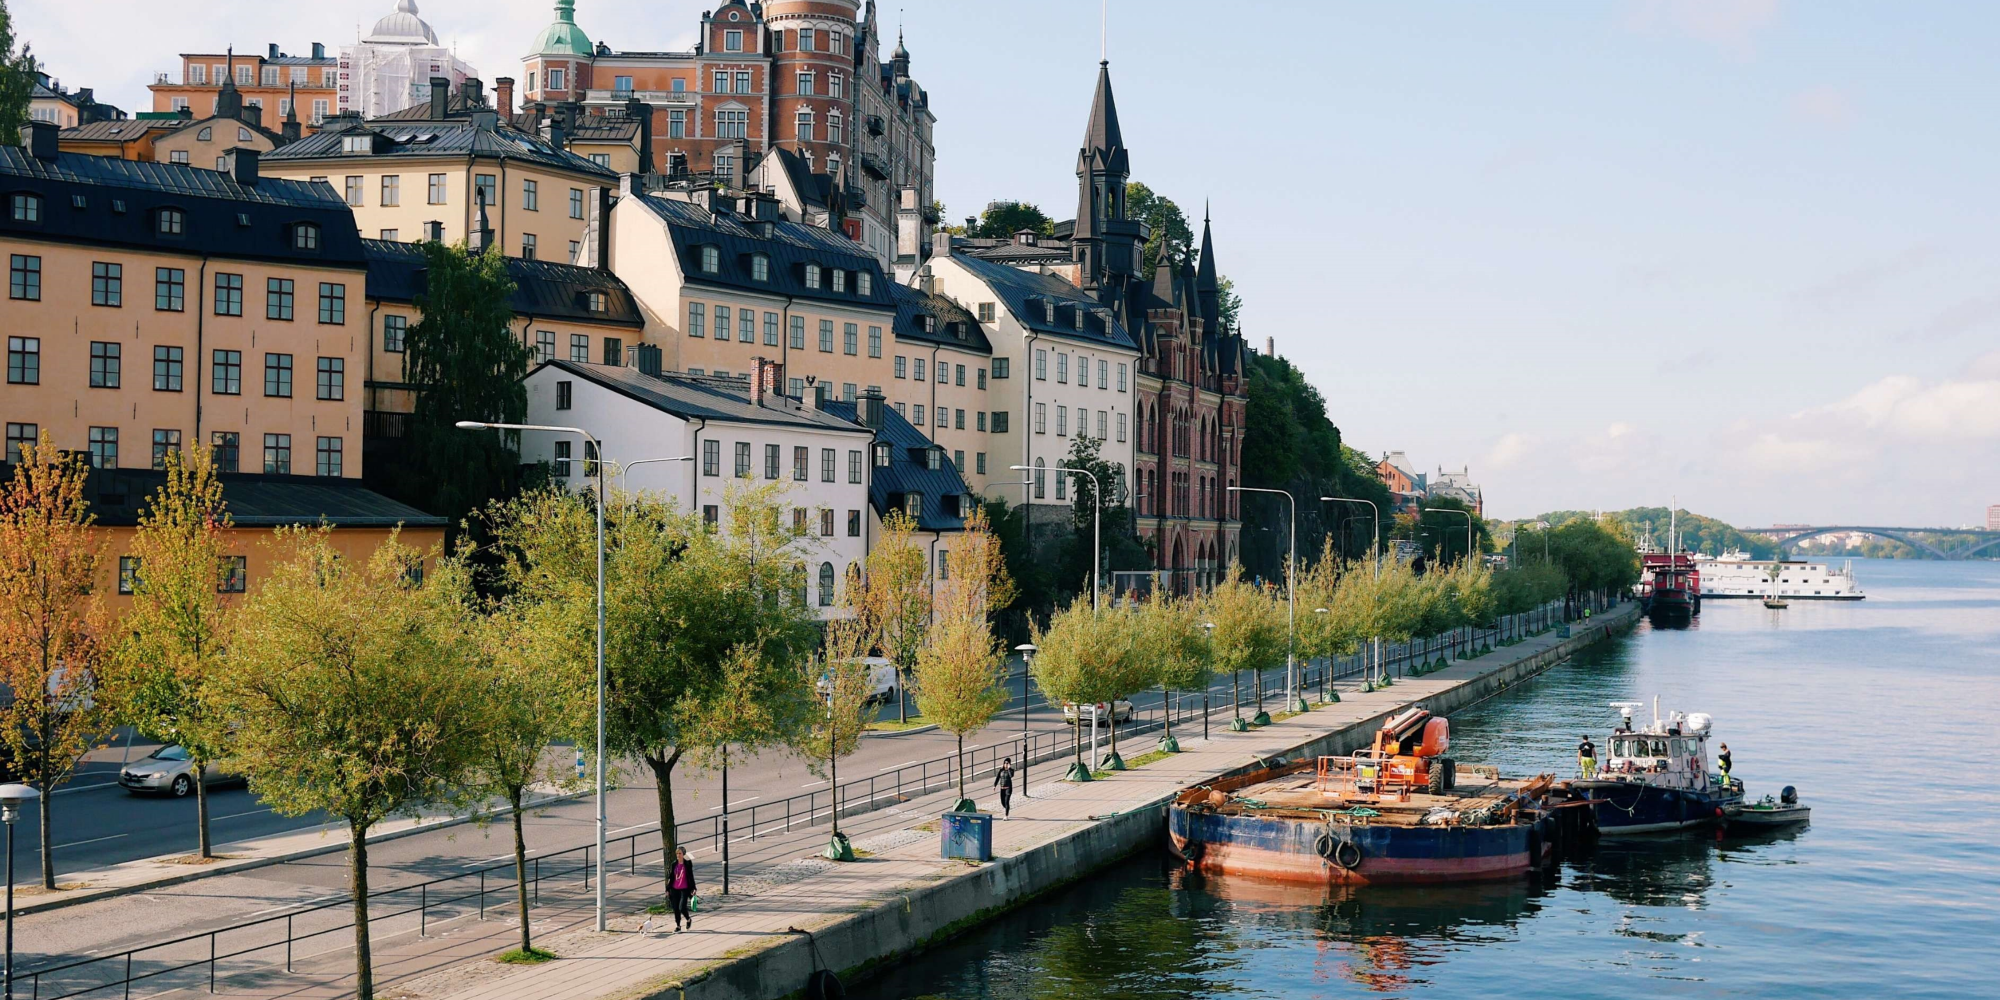 Mini krydstogt til Helsinki | FOF Københavns Omegn